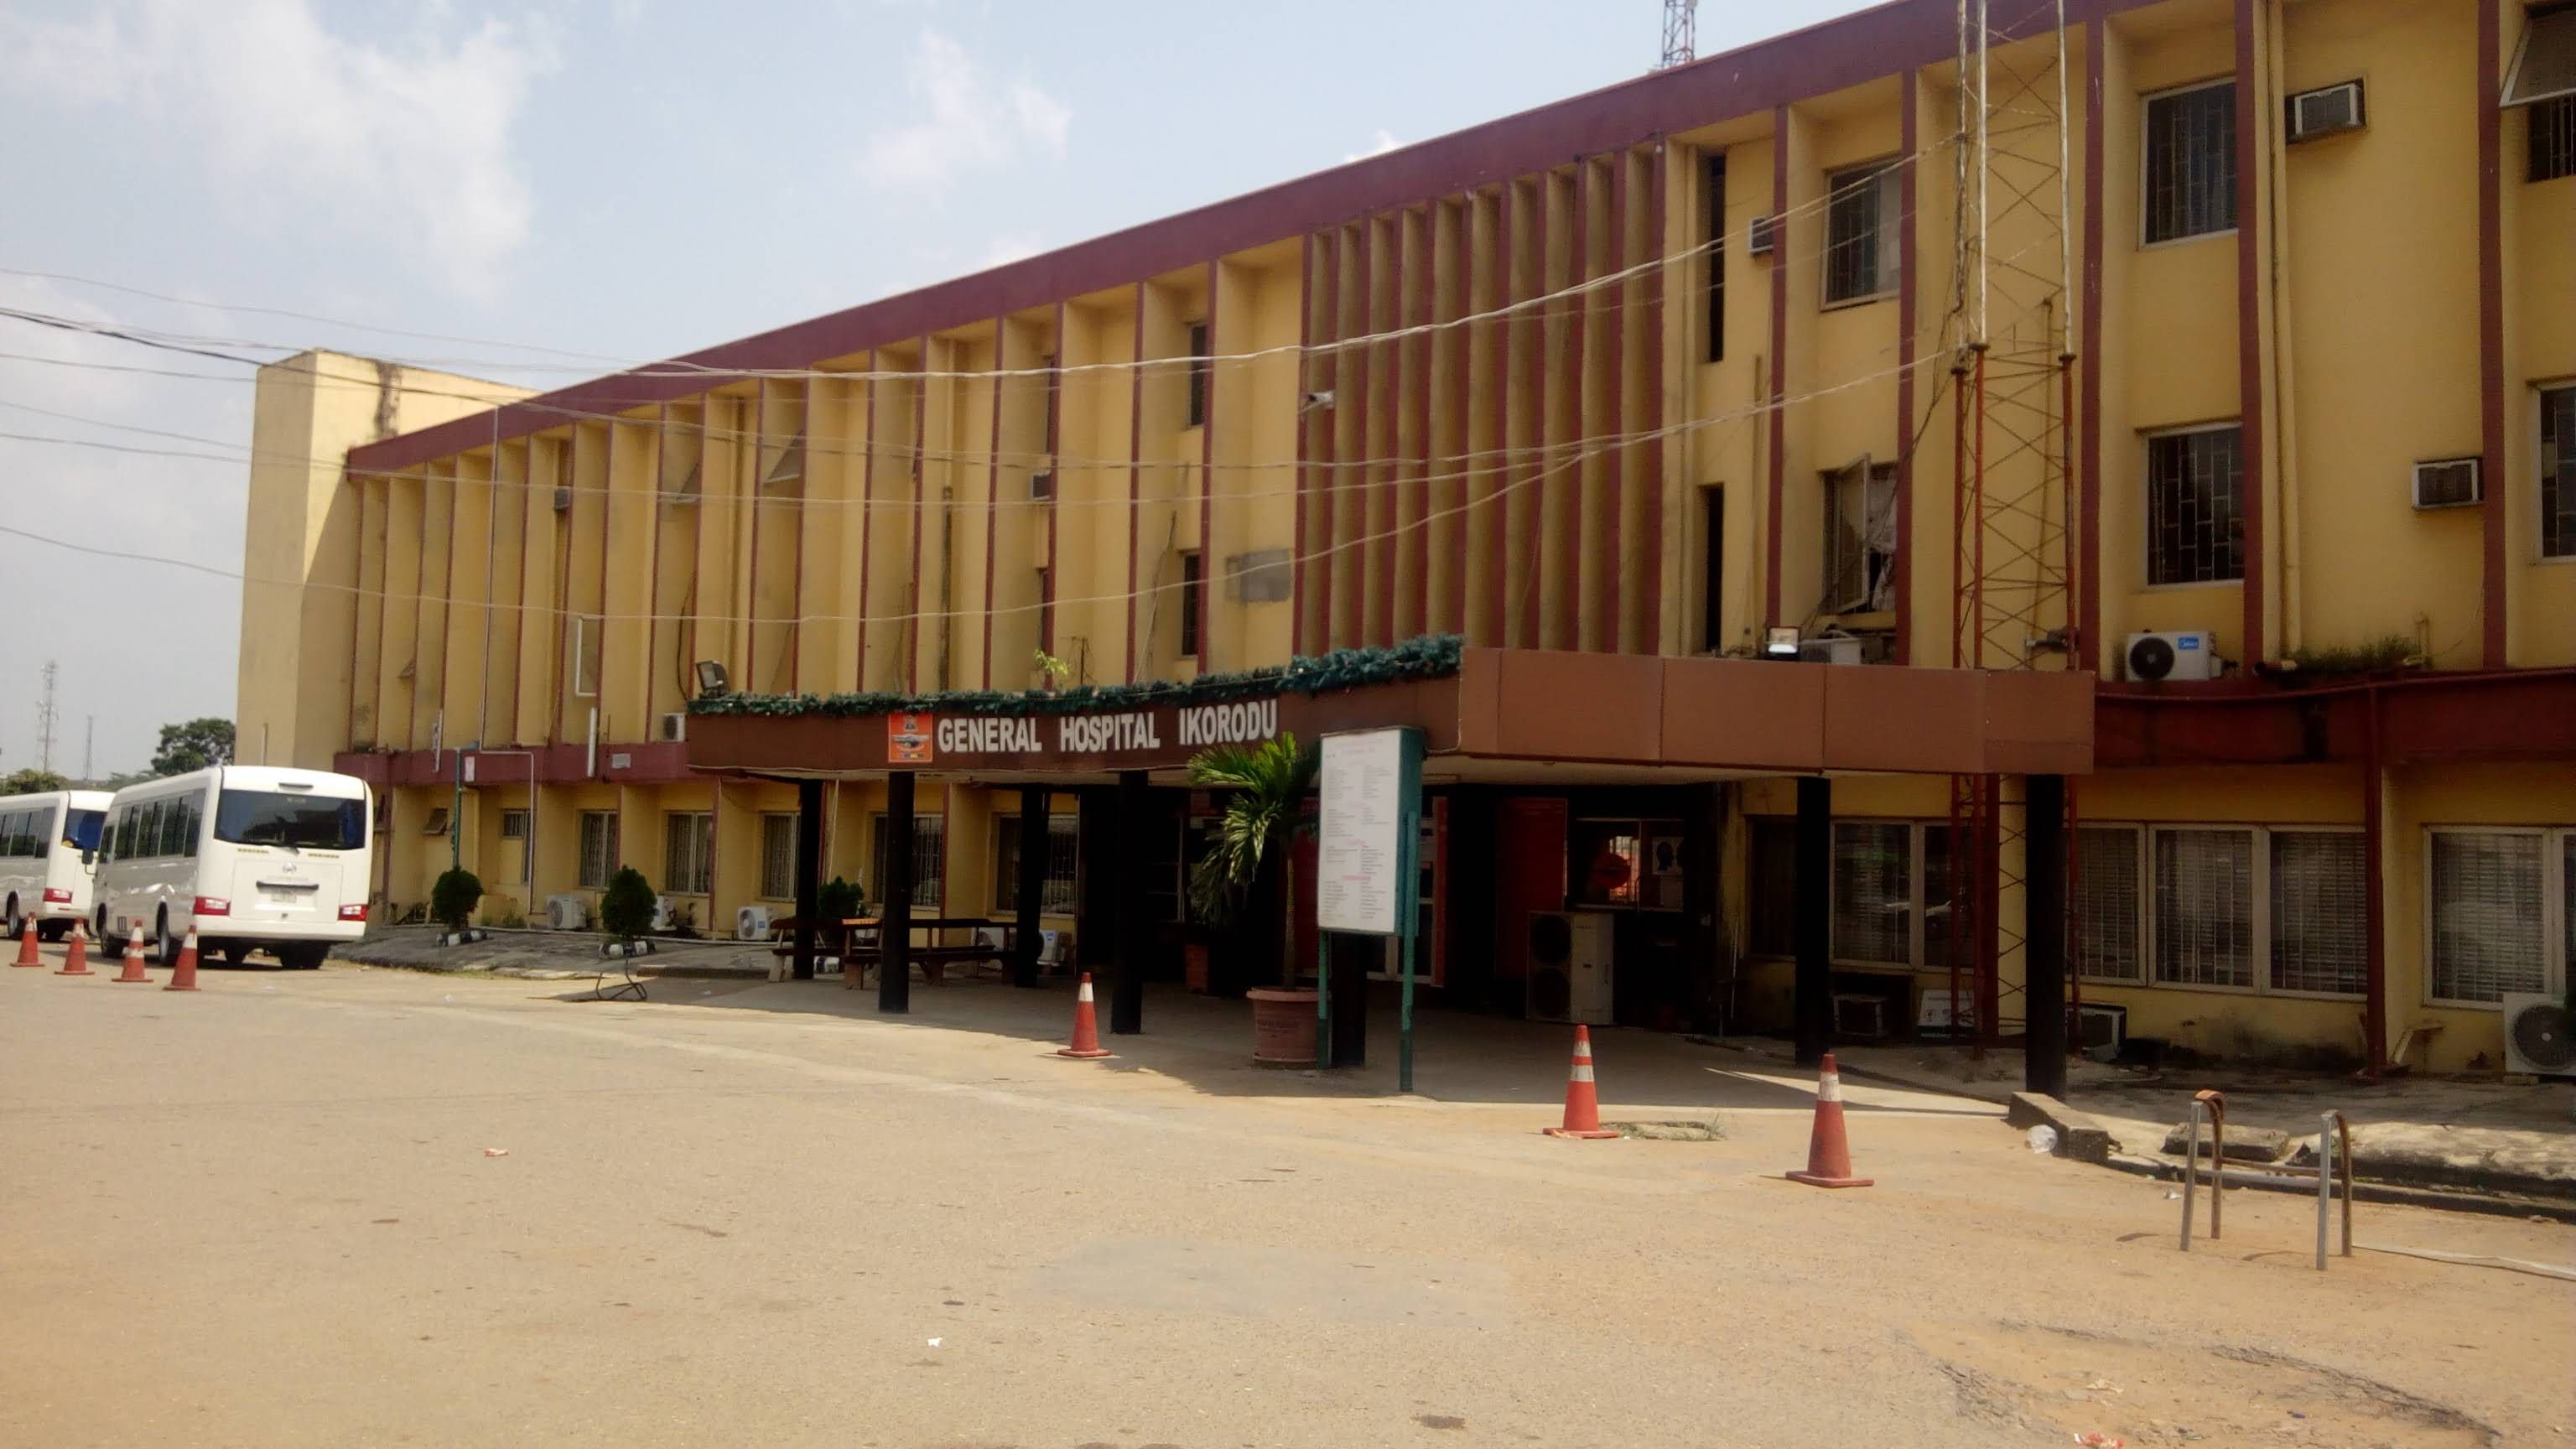 General Hospital Ikorodu